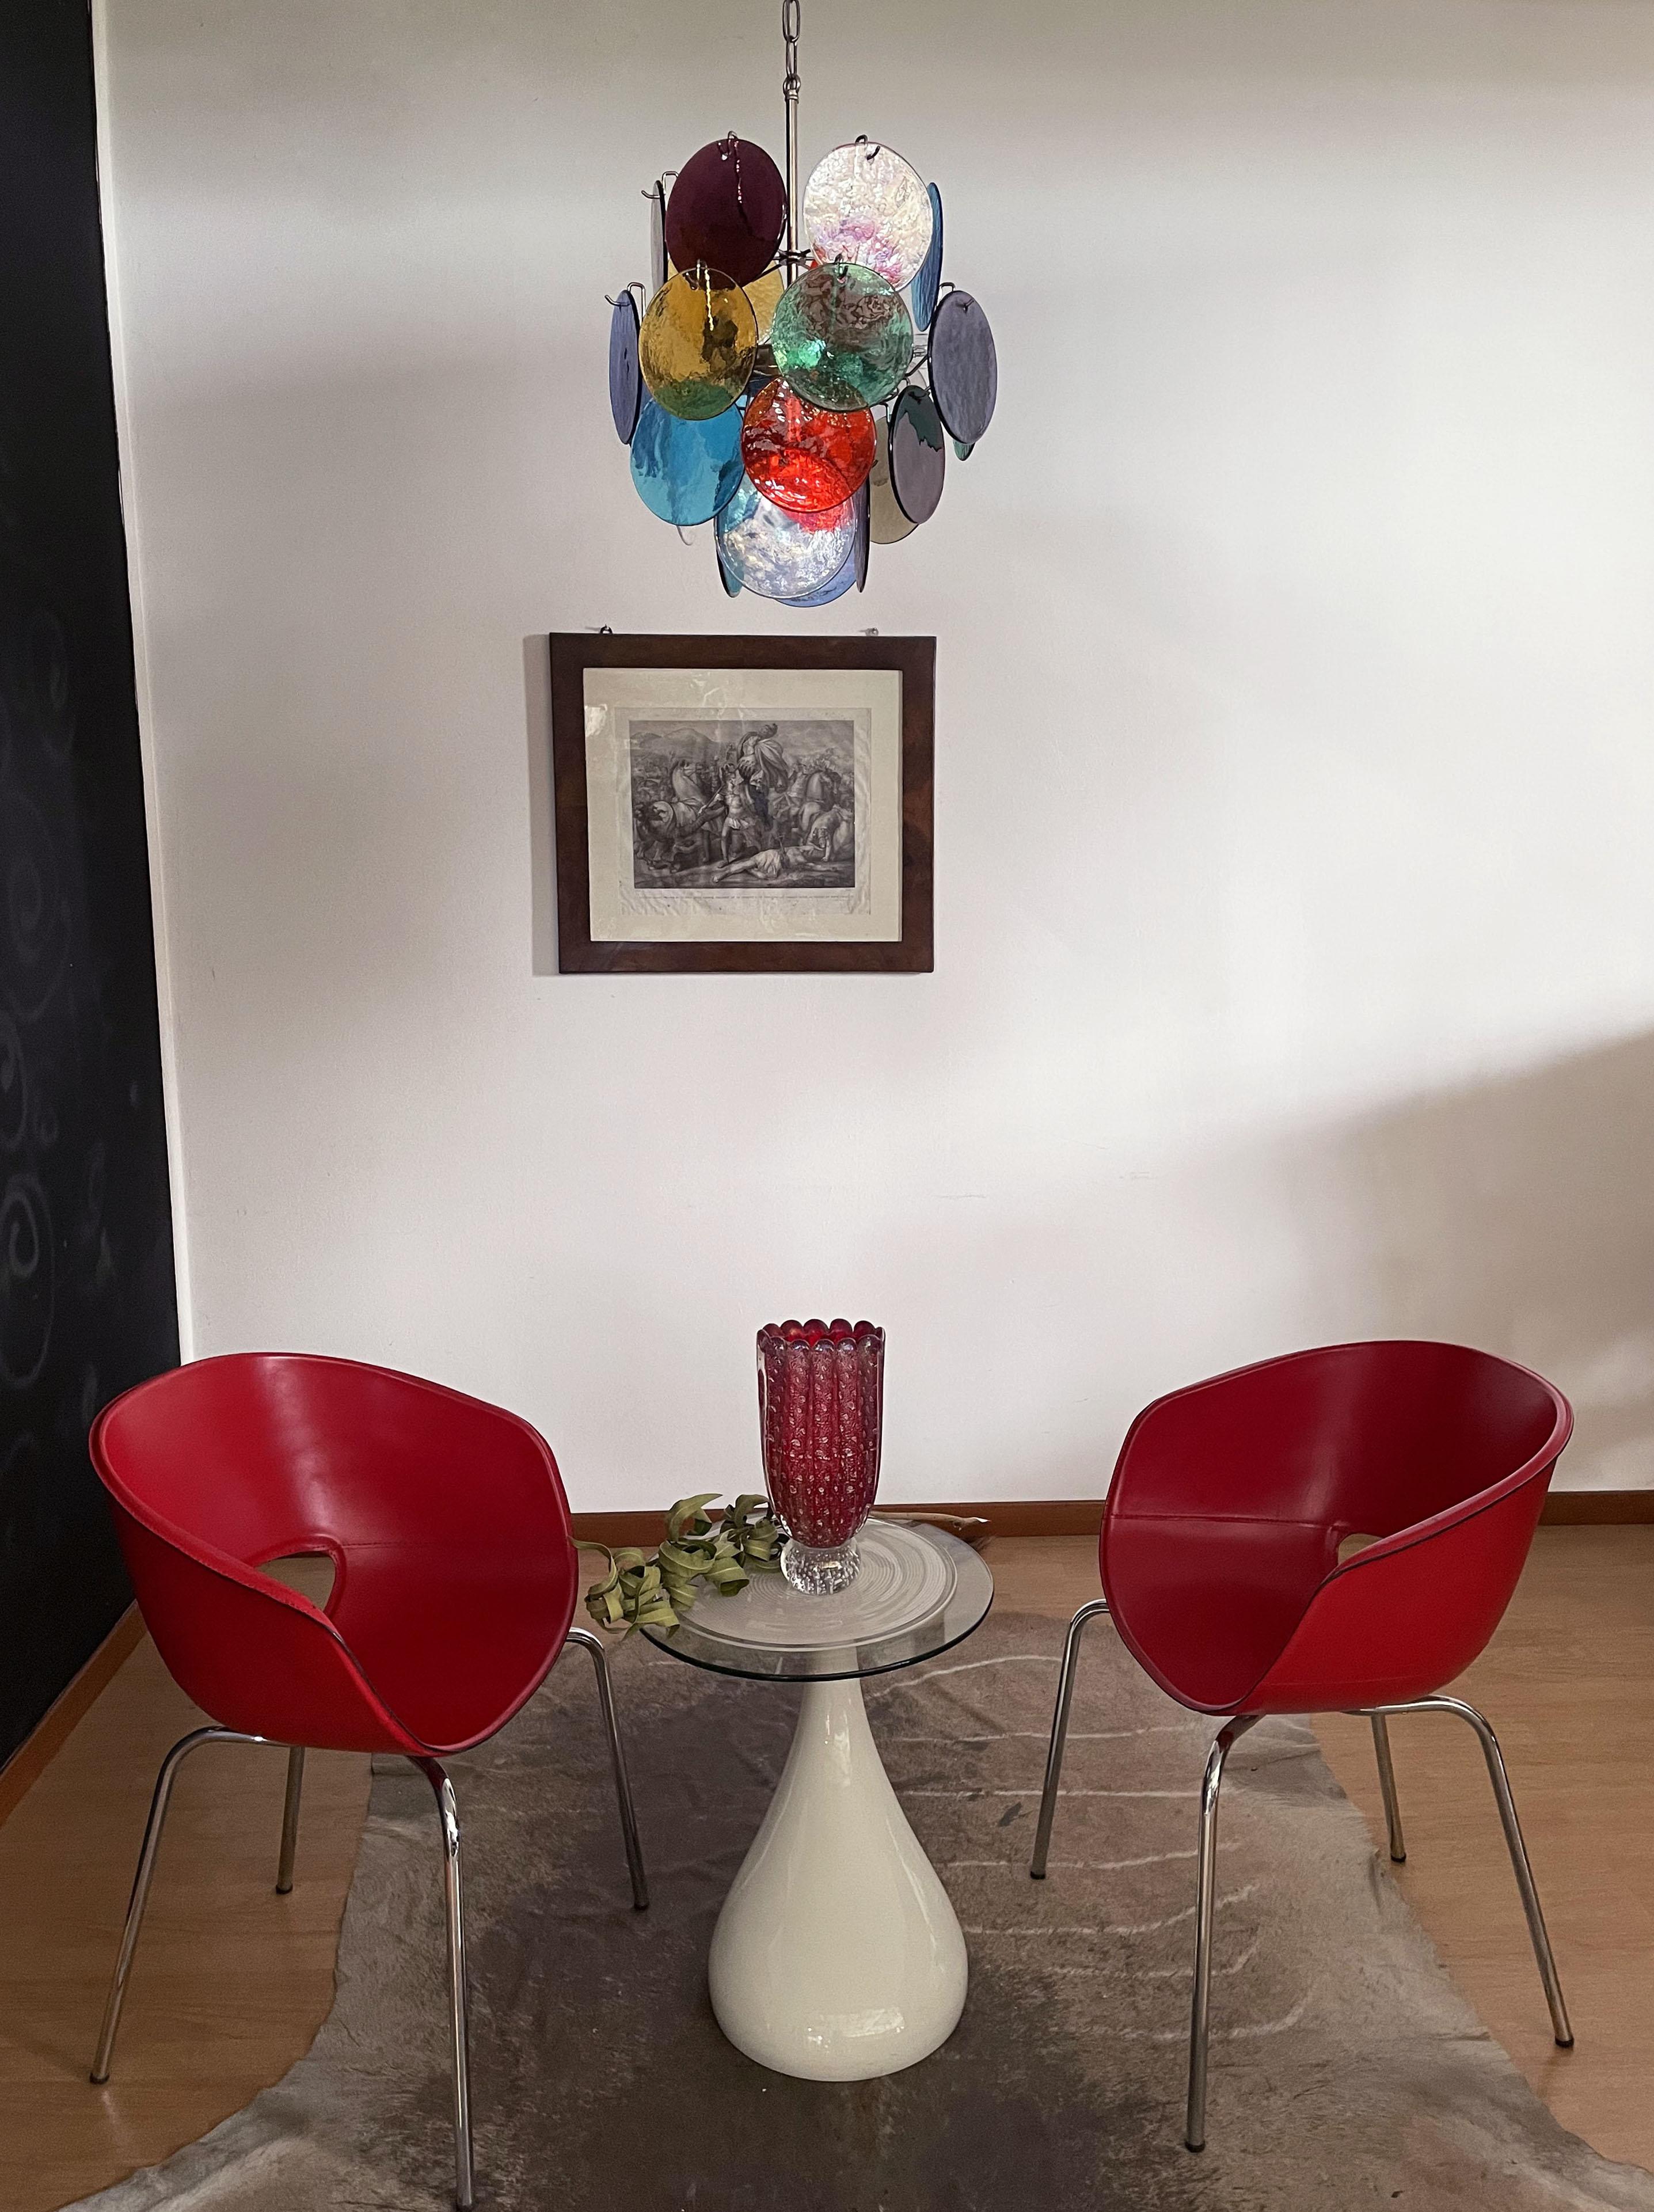 Vieux lustre italien en Murano de style Vistosi. Le lustre comporte 24 fantastiques disques multicolores de Murano dans un cadre métallique.
Période : fin du XXe siècle
Dimensions : 41,30 pouces (105 cm) de hauteur avec chaîne ; 20,50 pouces (52 cm)